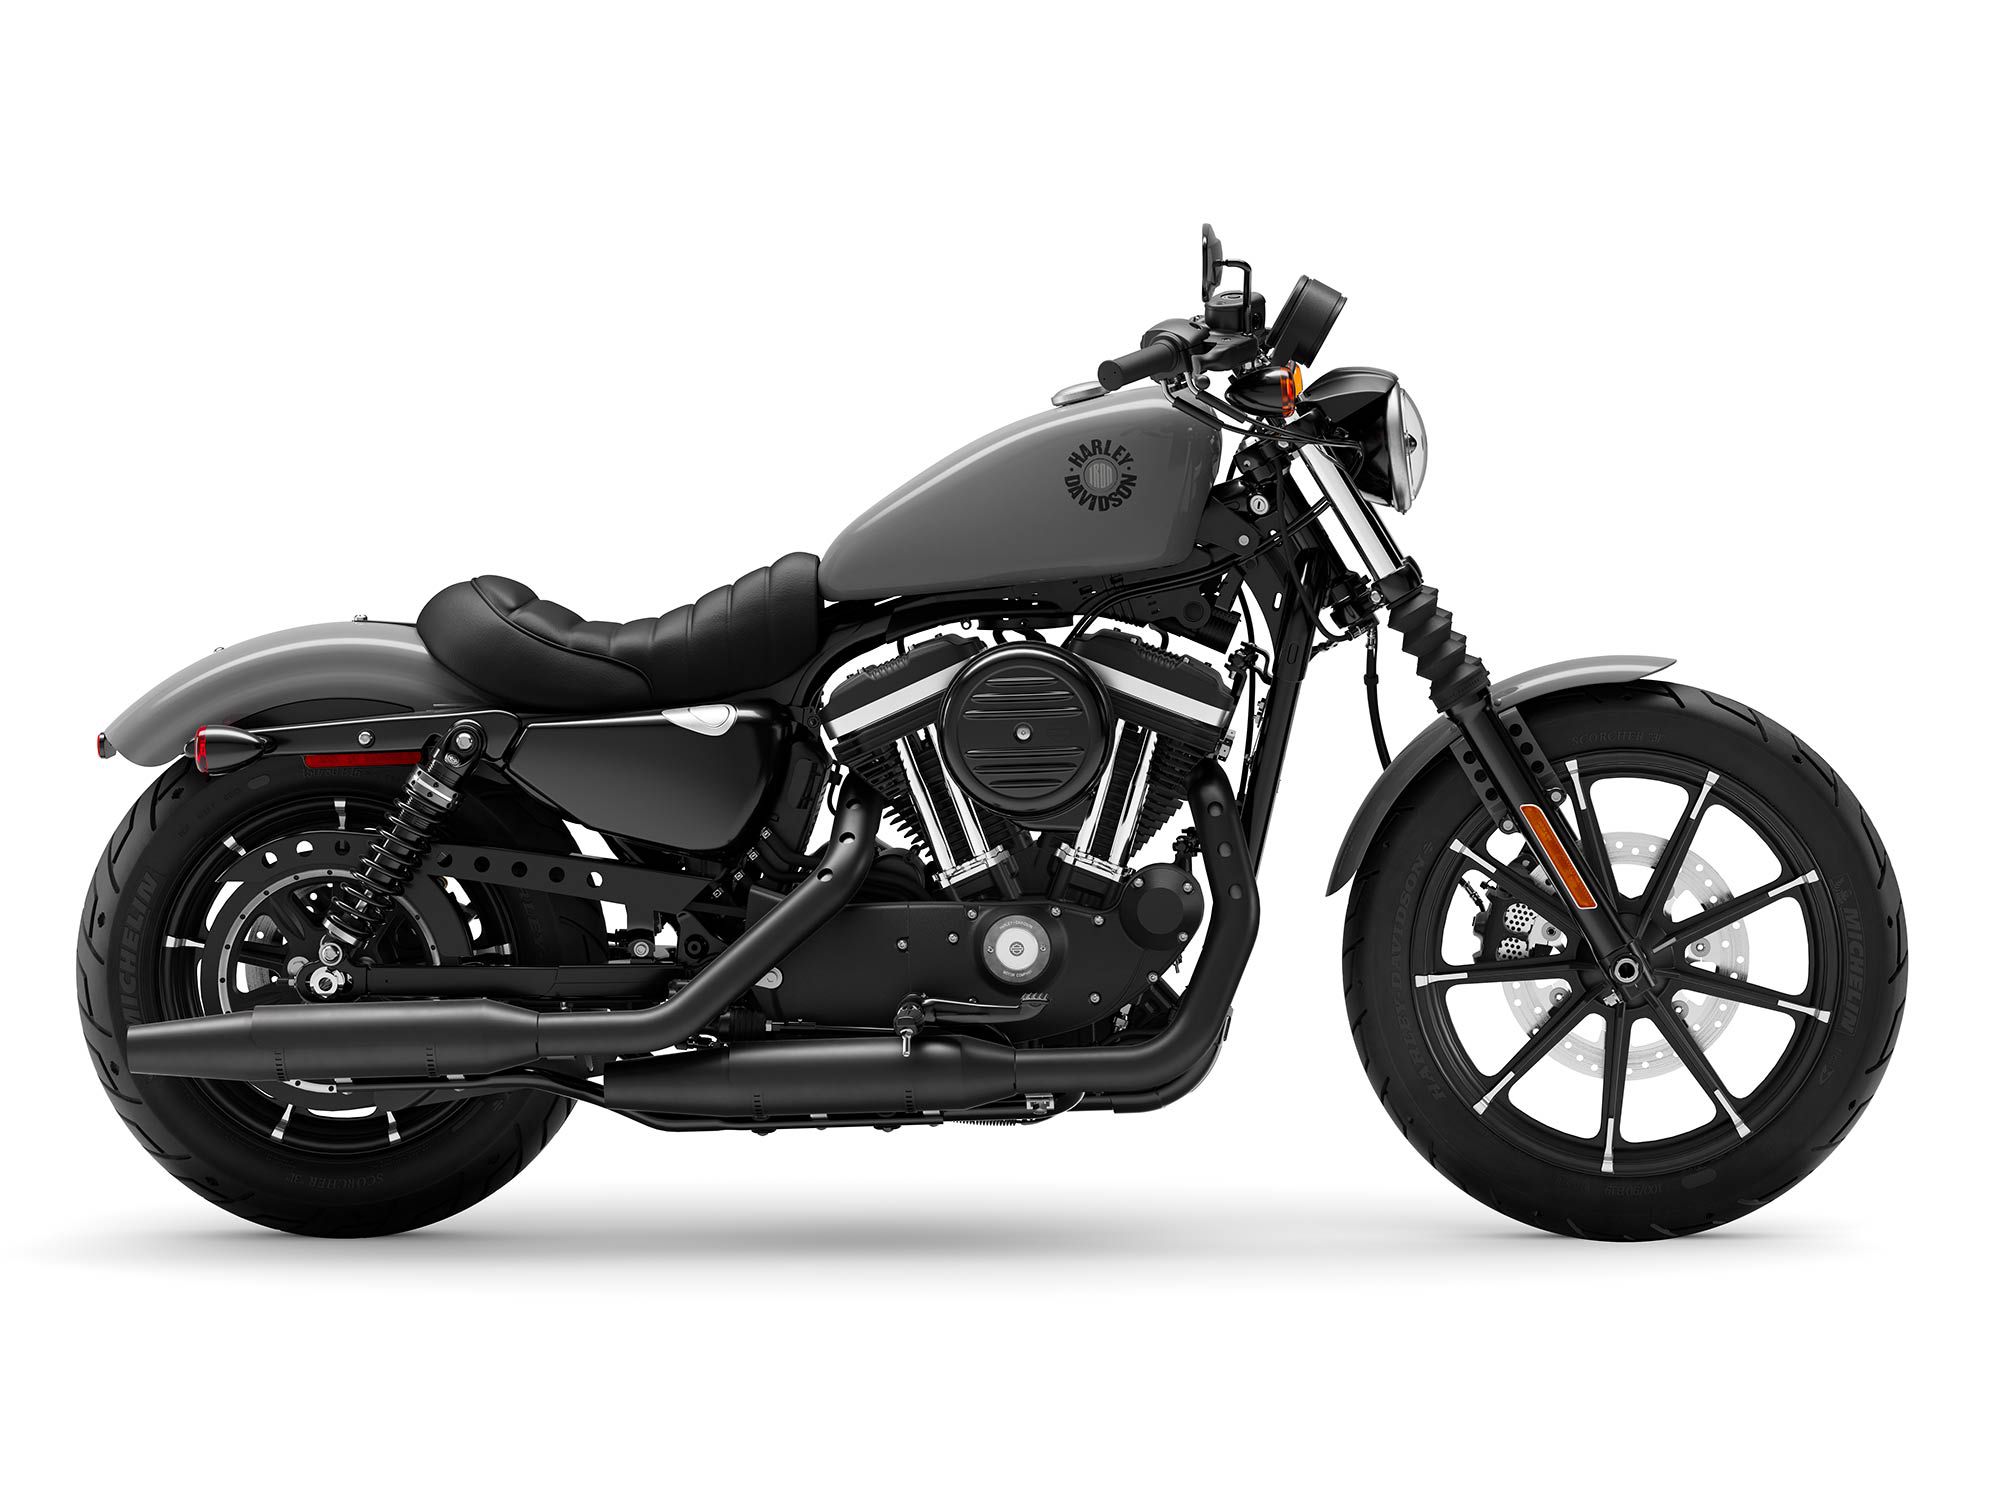 2022 Harley-Davidson Iron 883 in Gunship Gray.